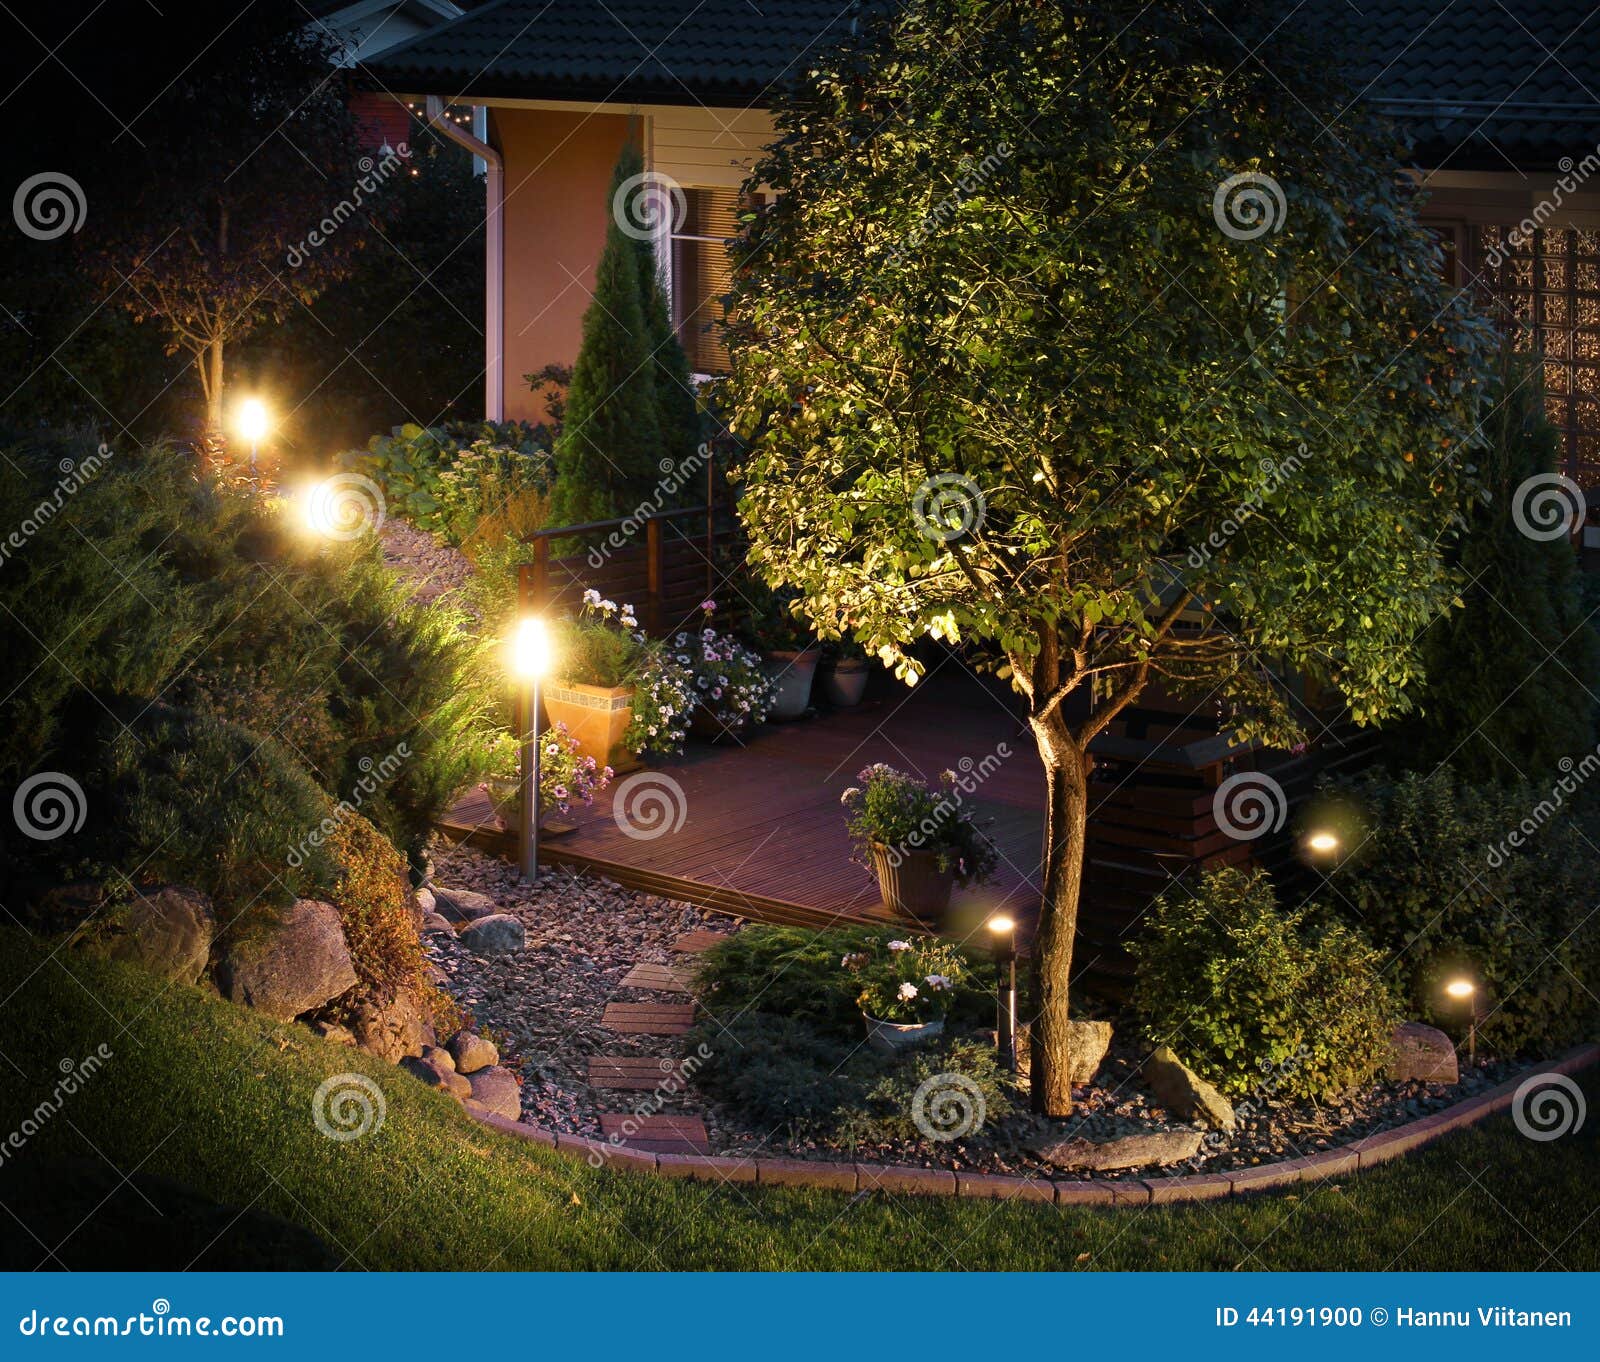 illuminated garden path patio